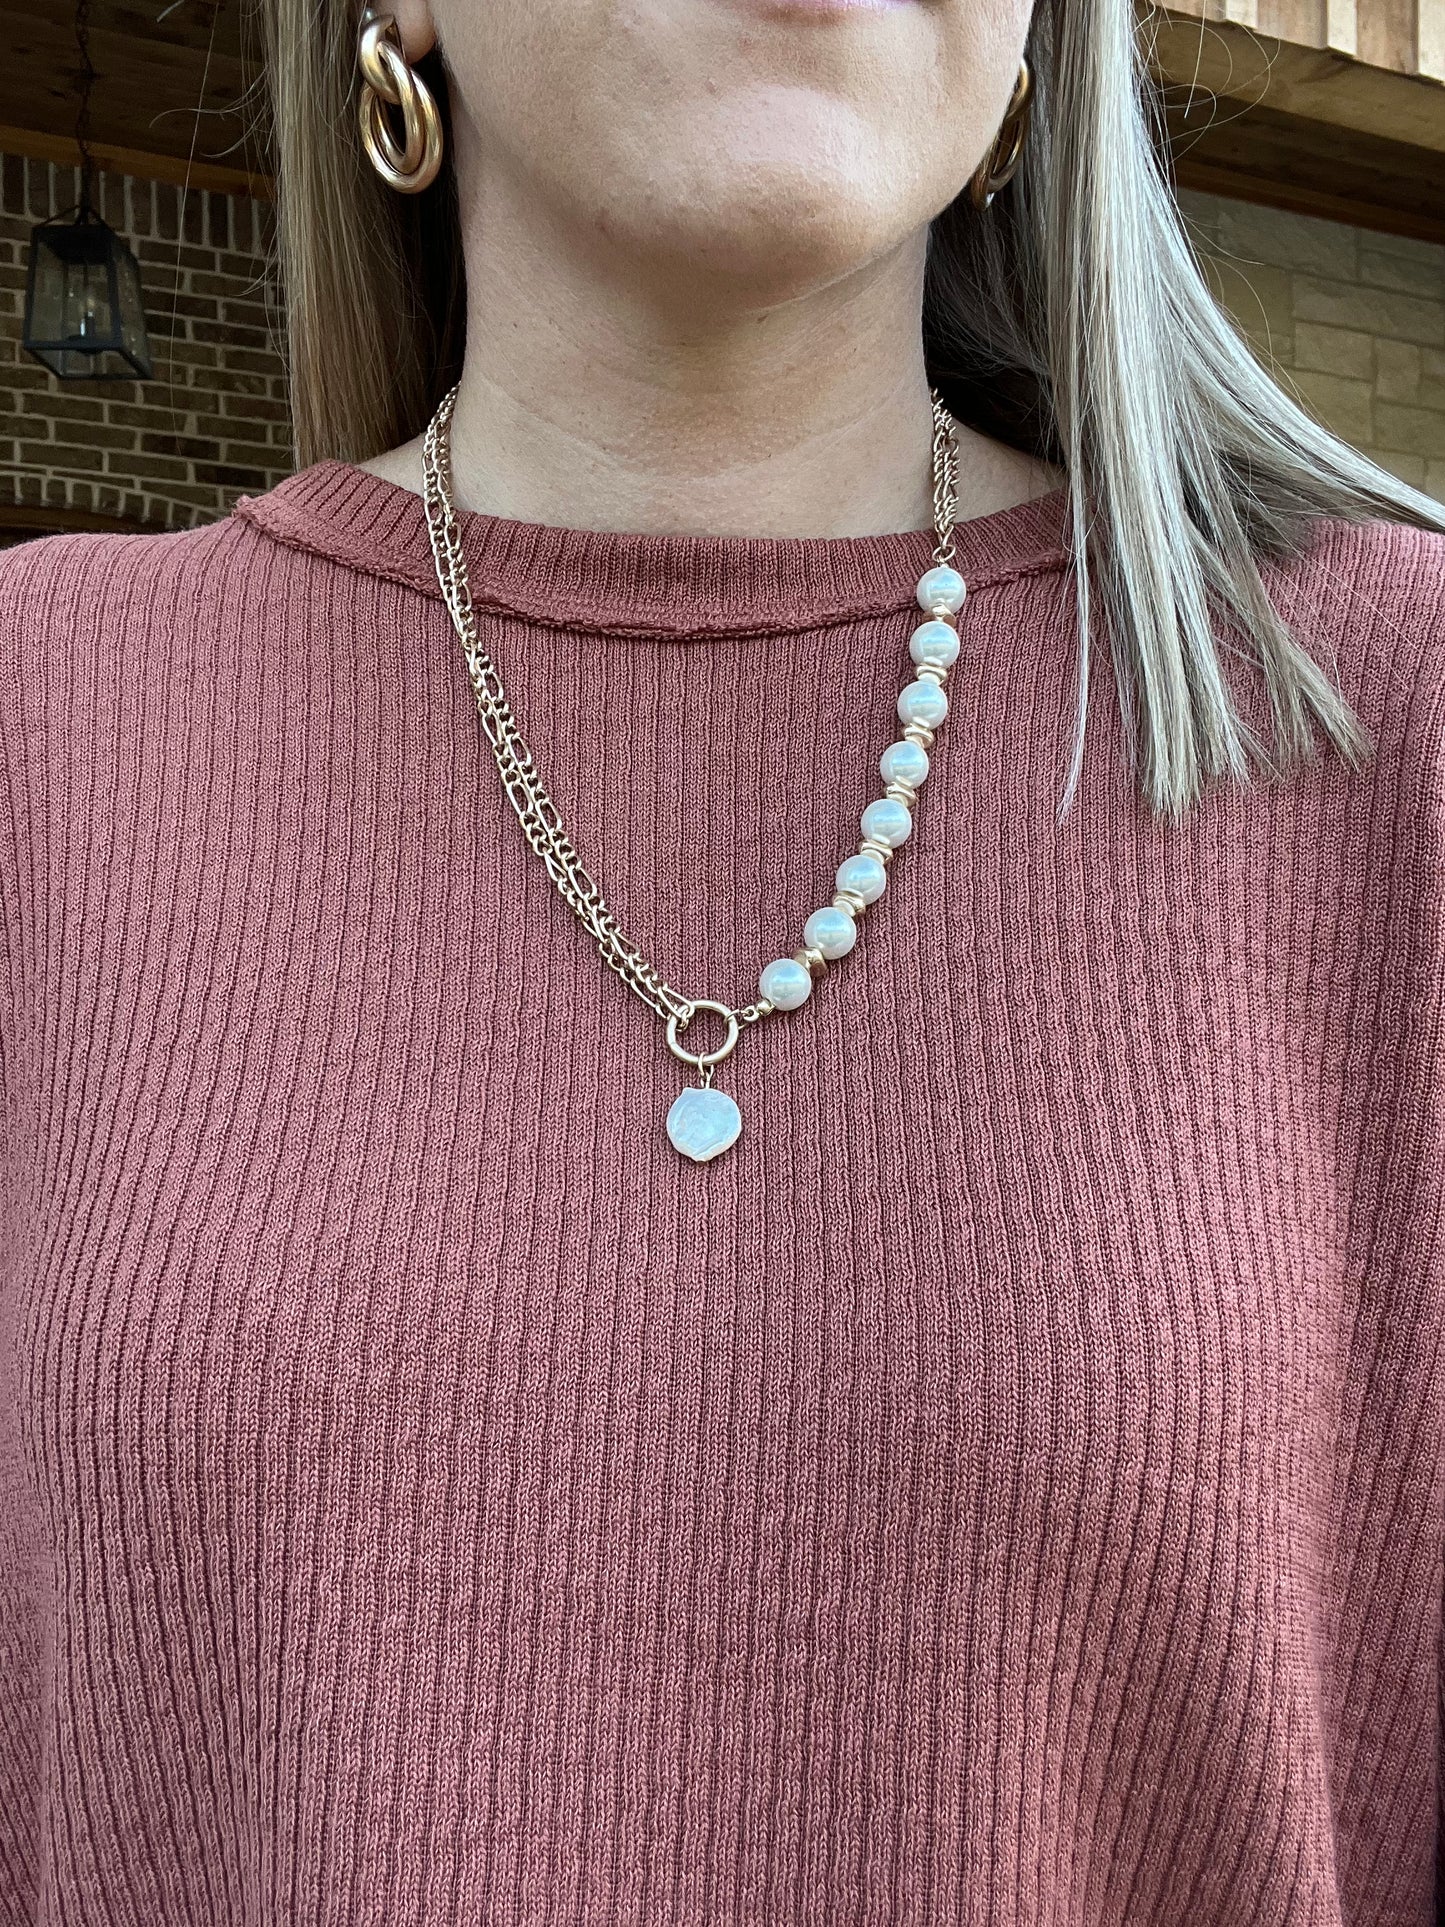 Bonita necklace with pearls